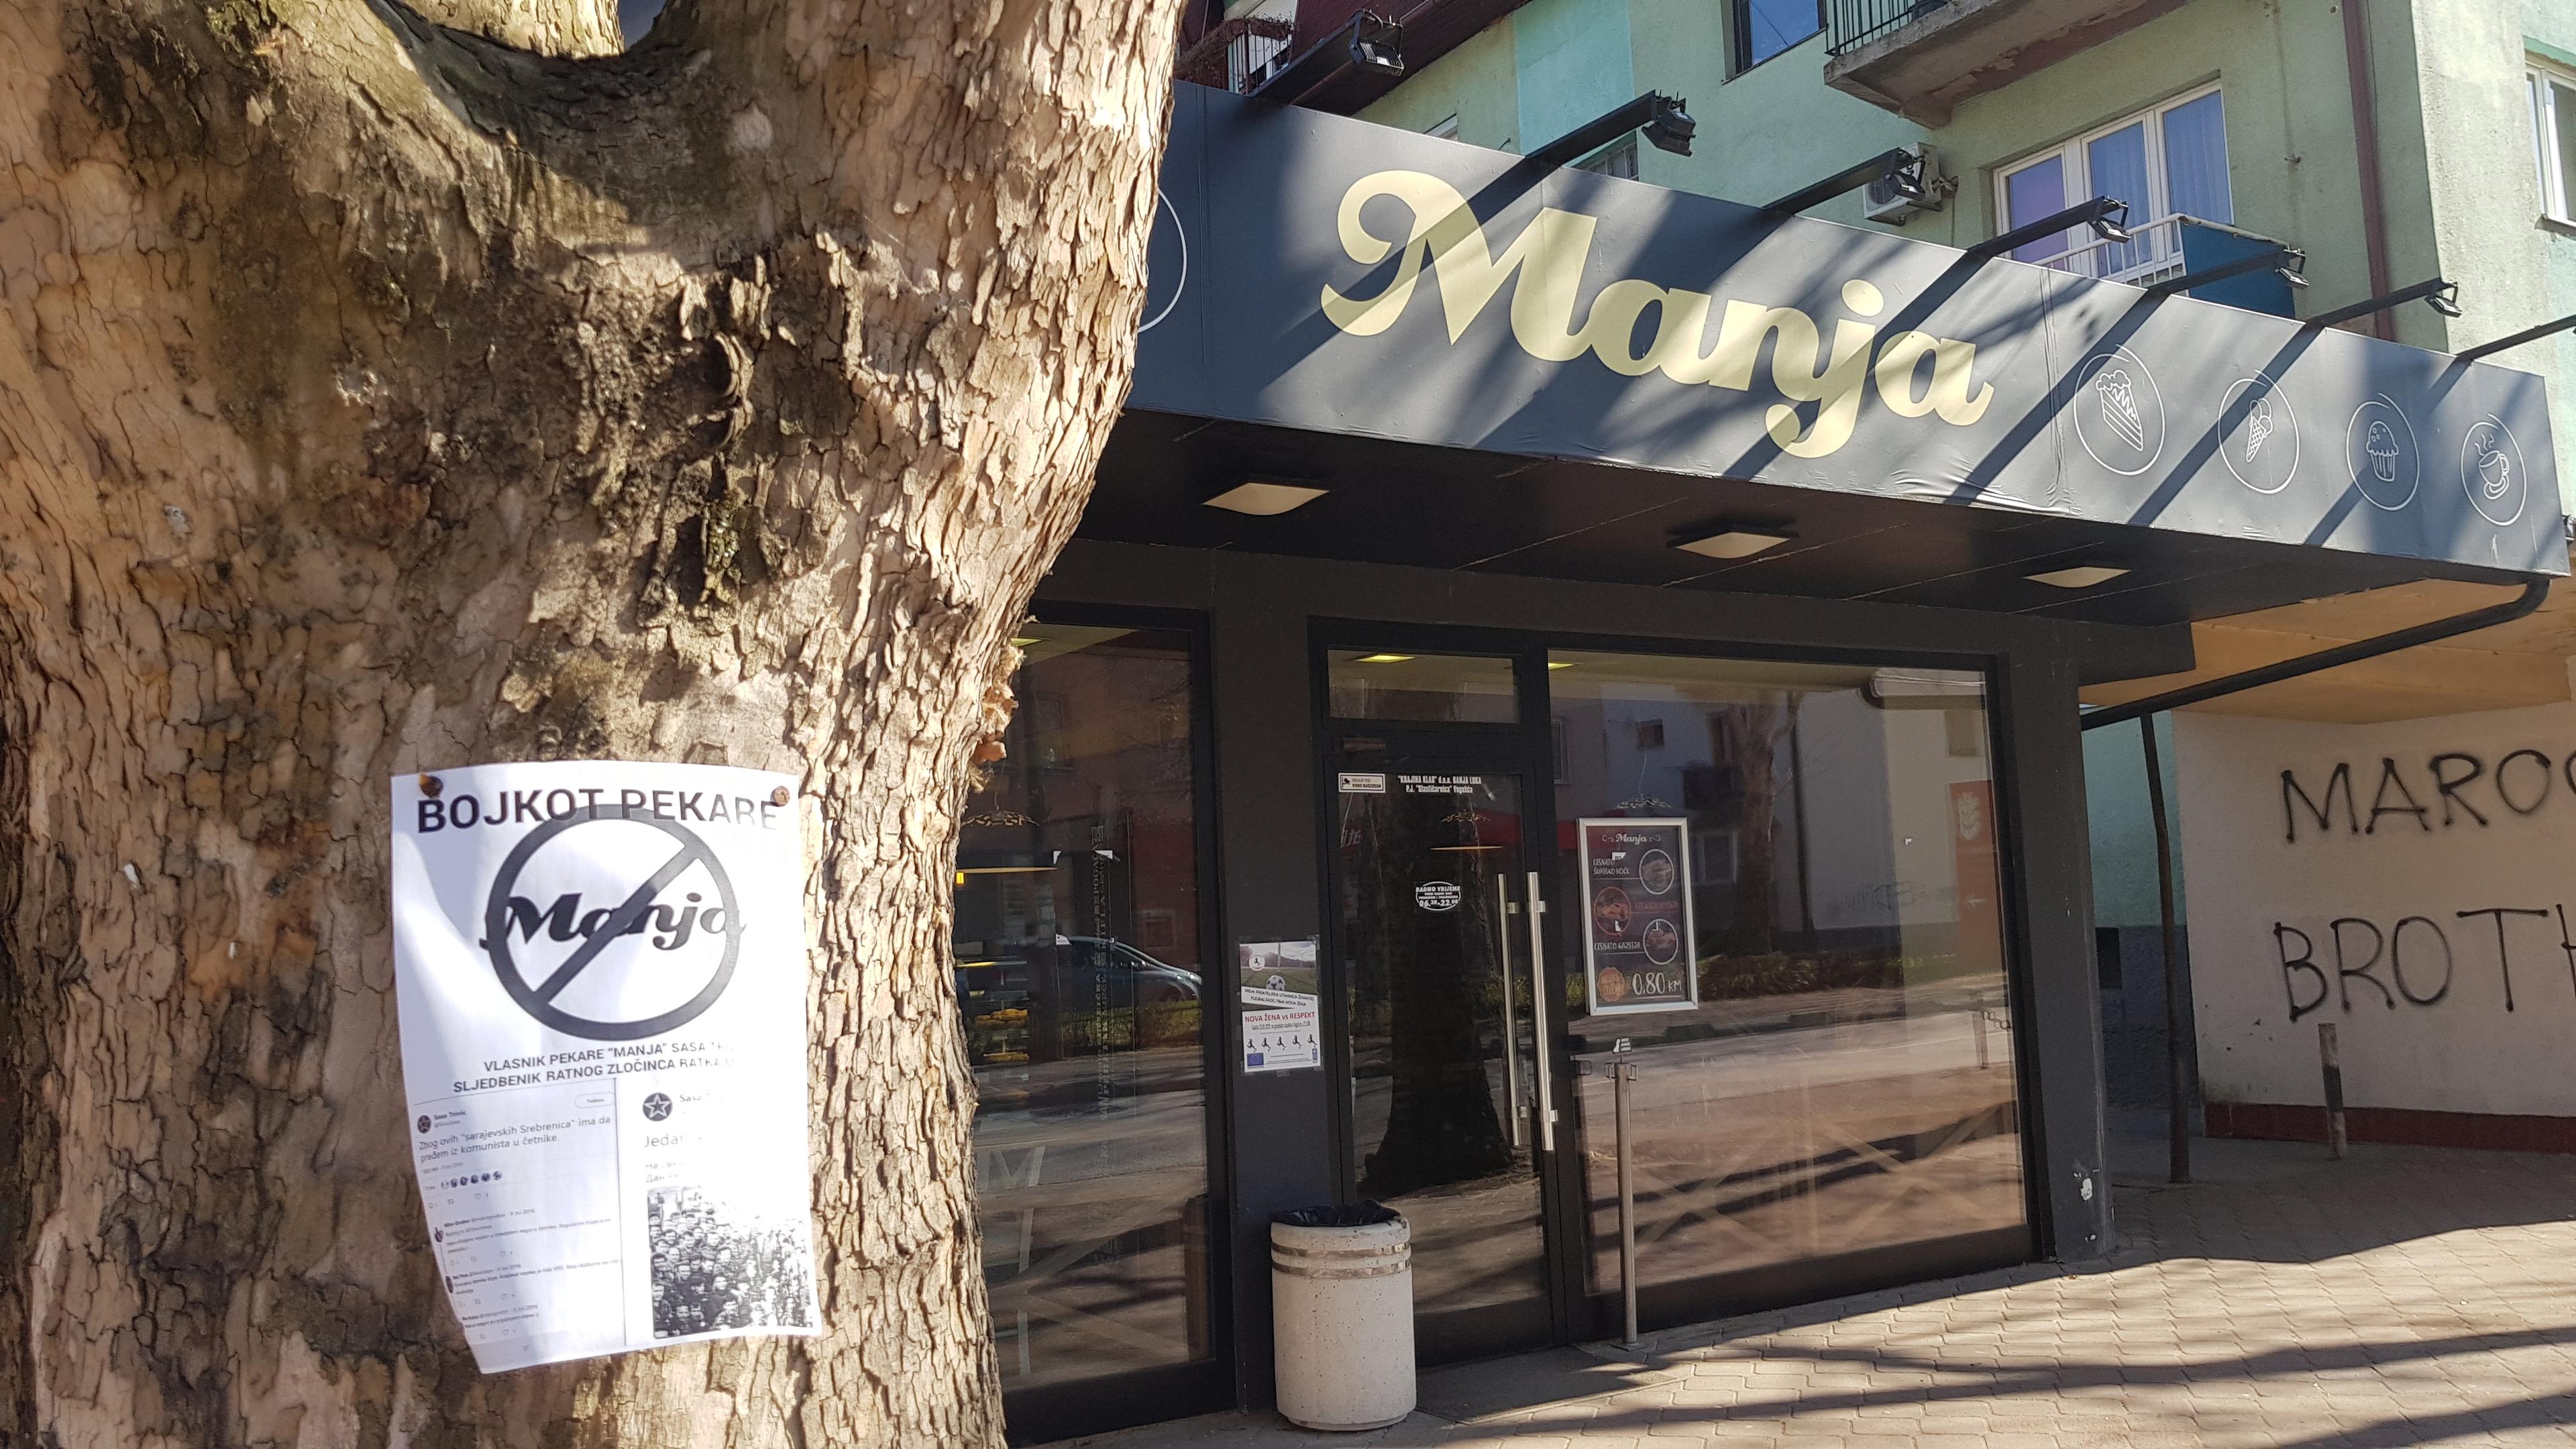 Nakon bojkota na društvenim mrežama, građani lijepe letke oko pekare "Manja"